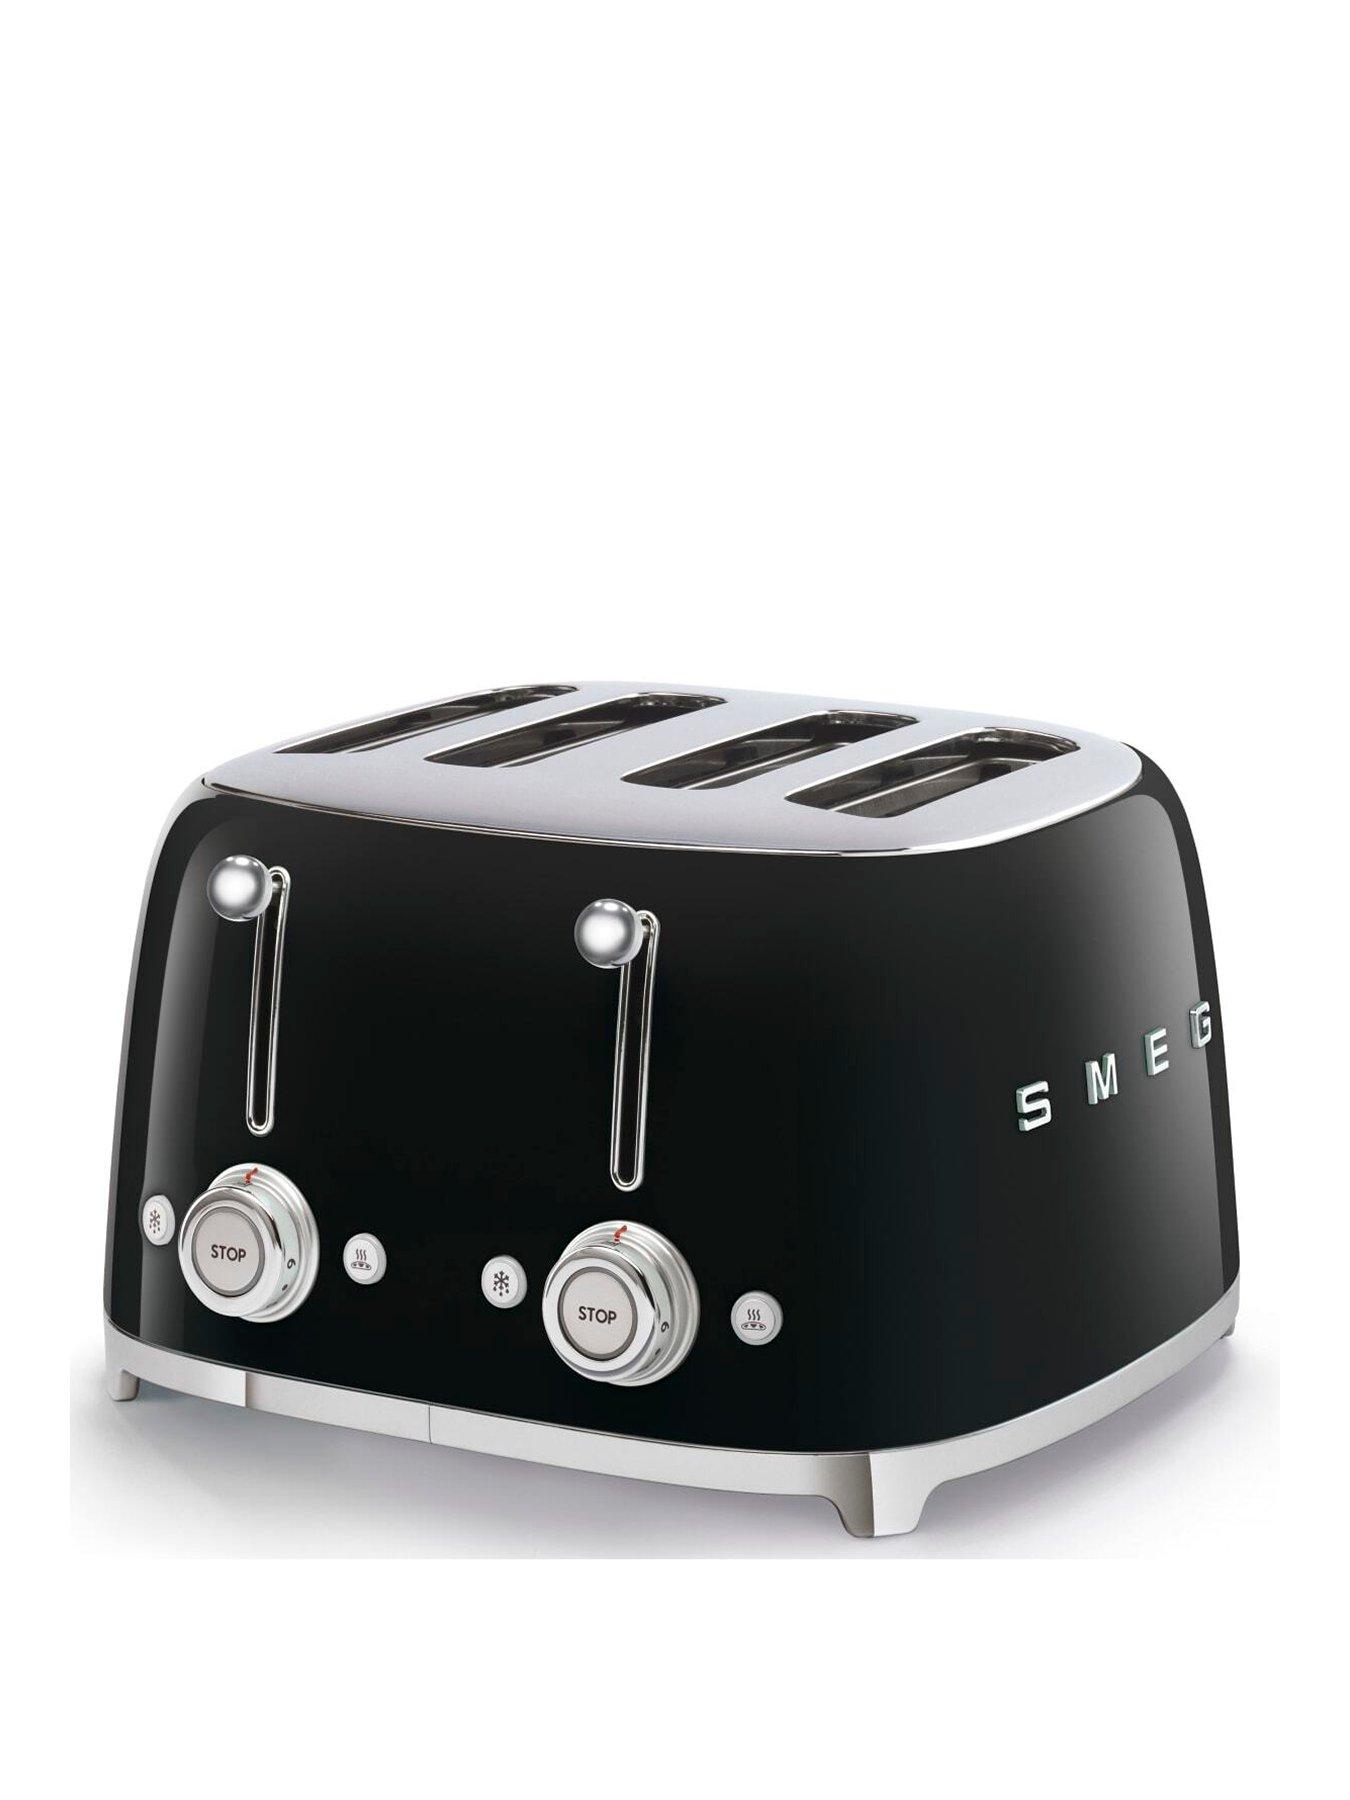 Smeg Tsf03 Retro Style 4 Slice Toaster, 2000W - Black